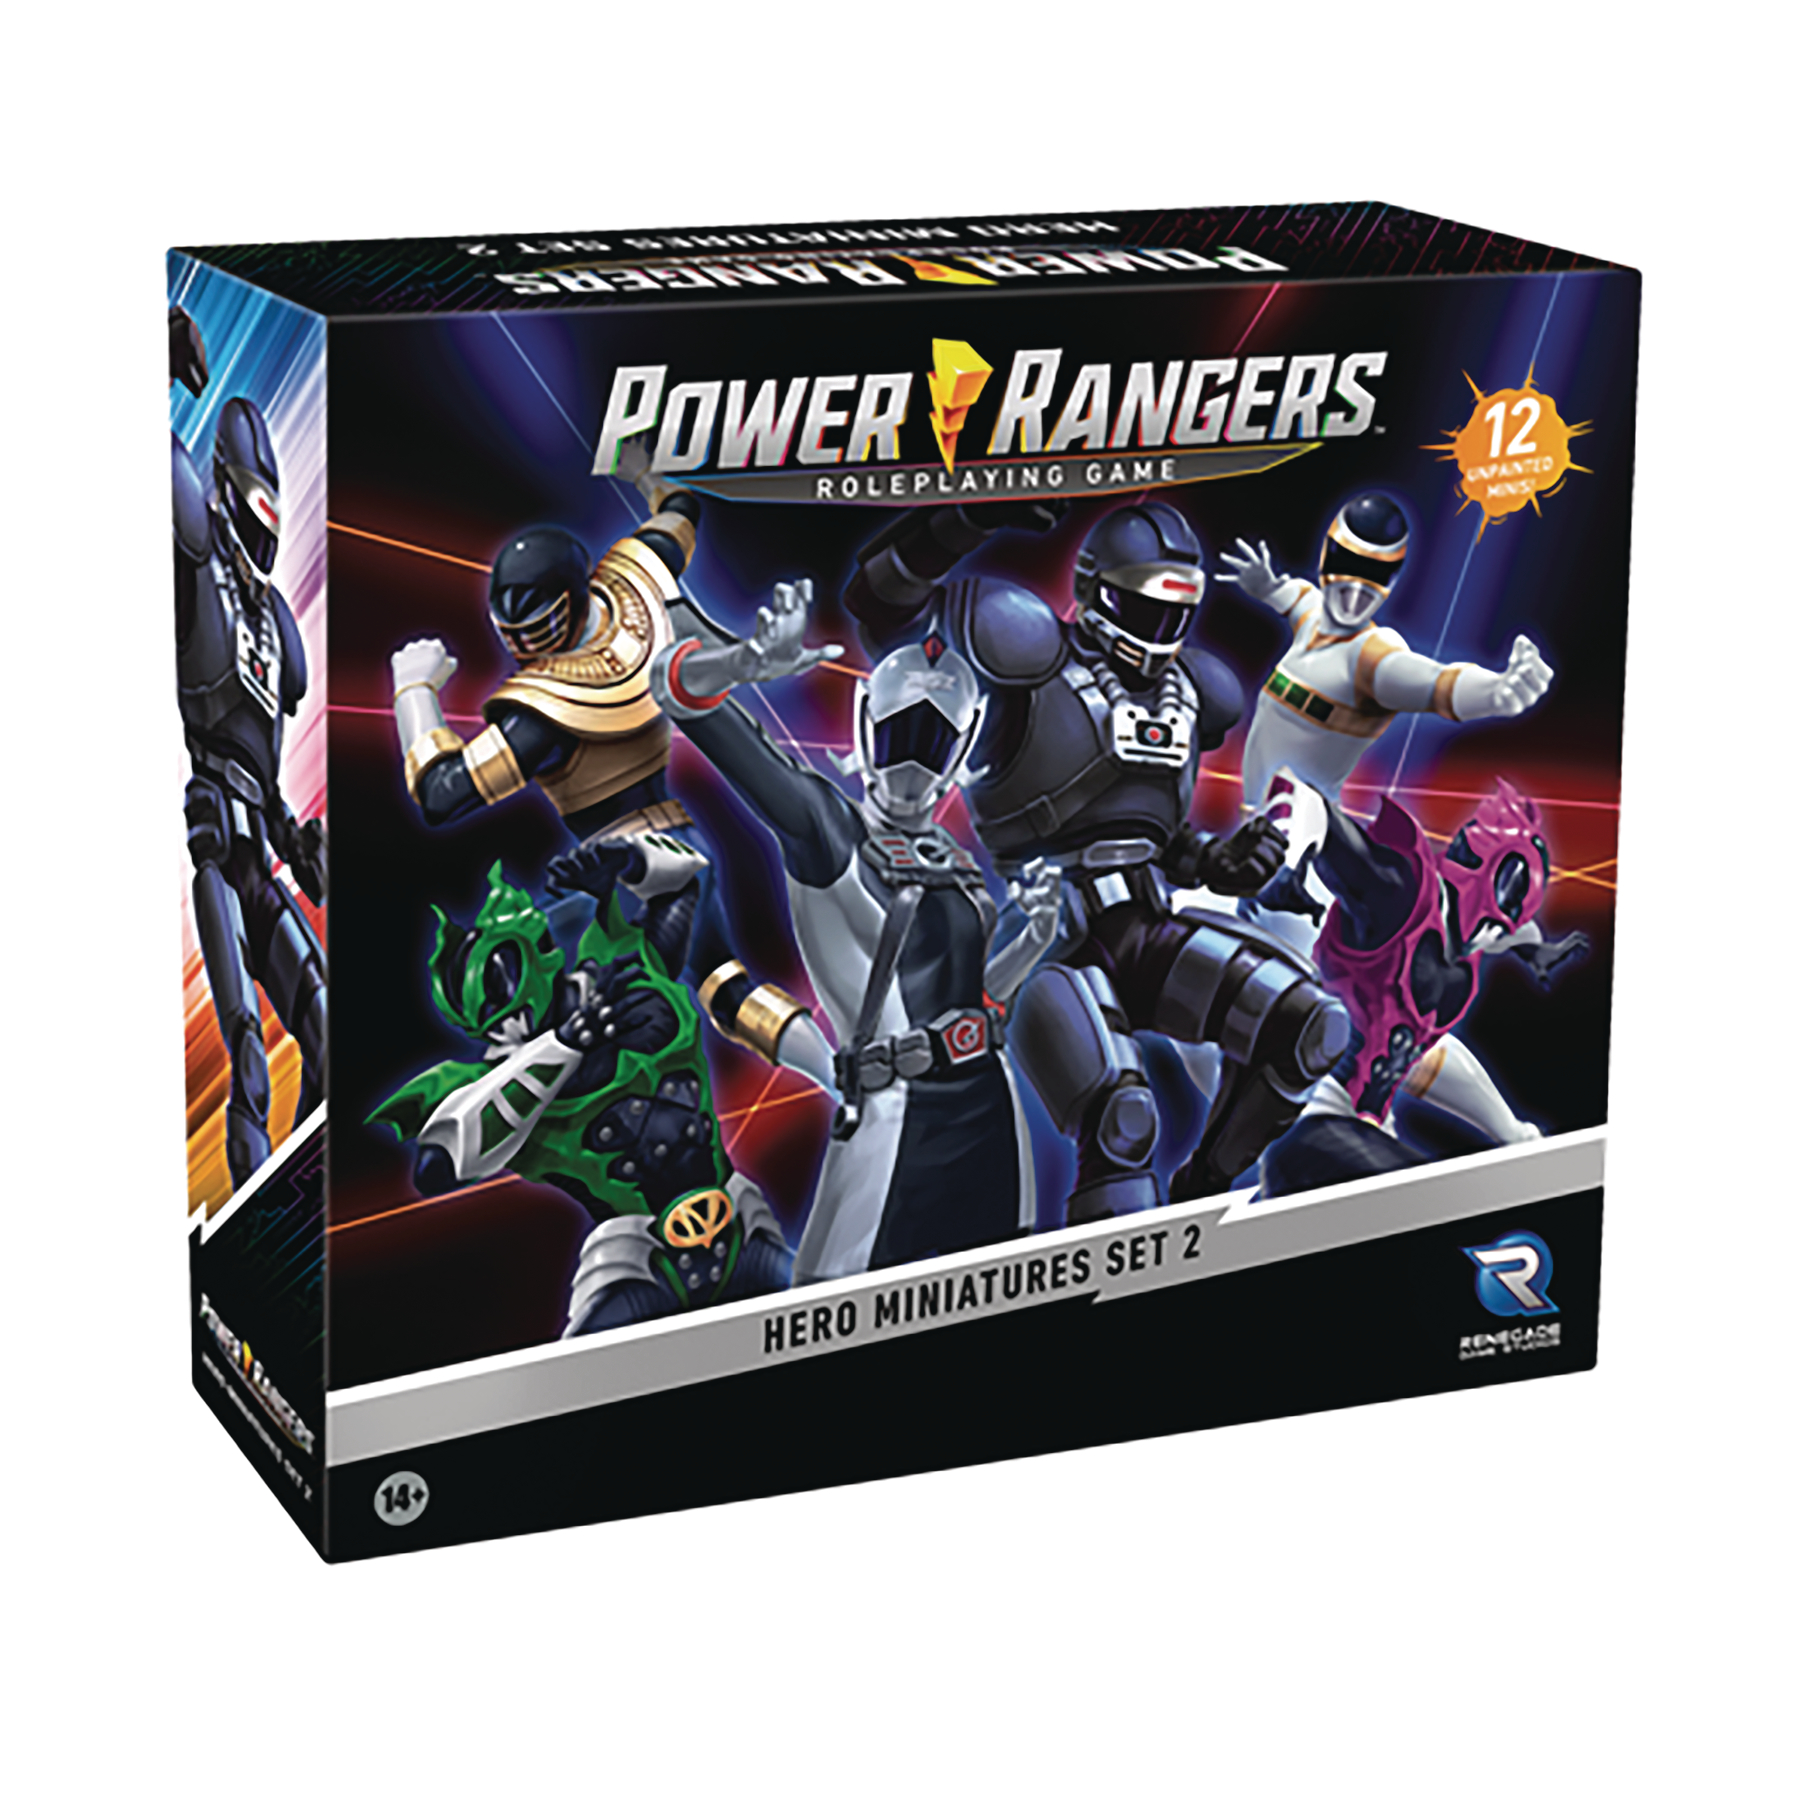 Power Rangers RPG Hero Mini Set 2